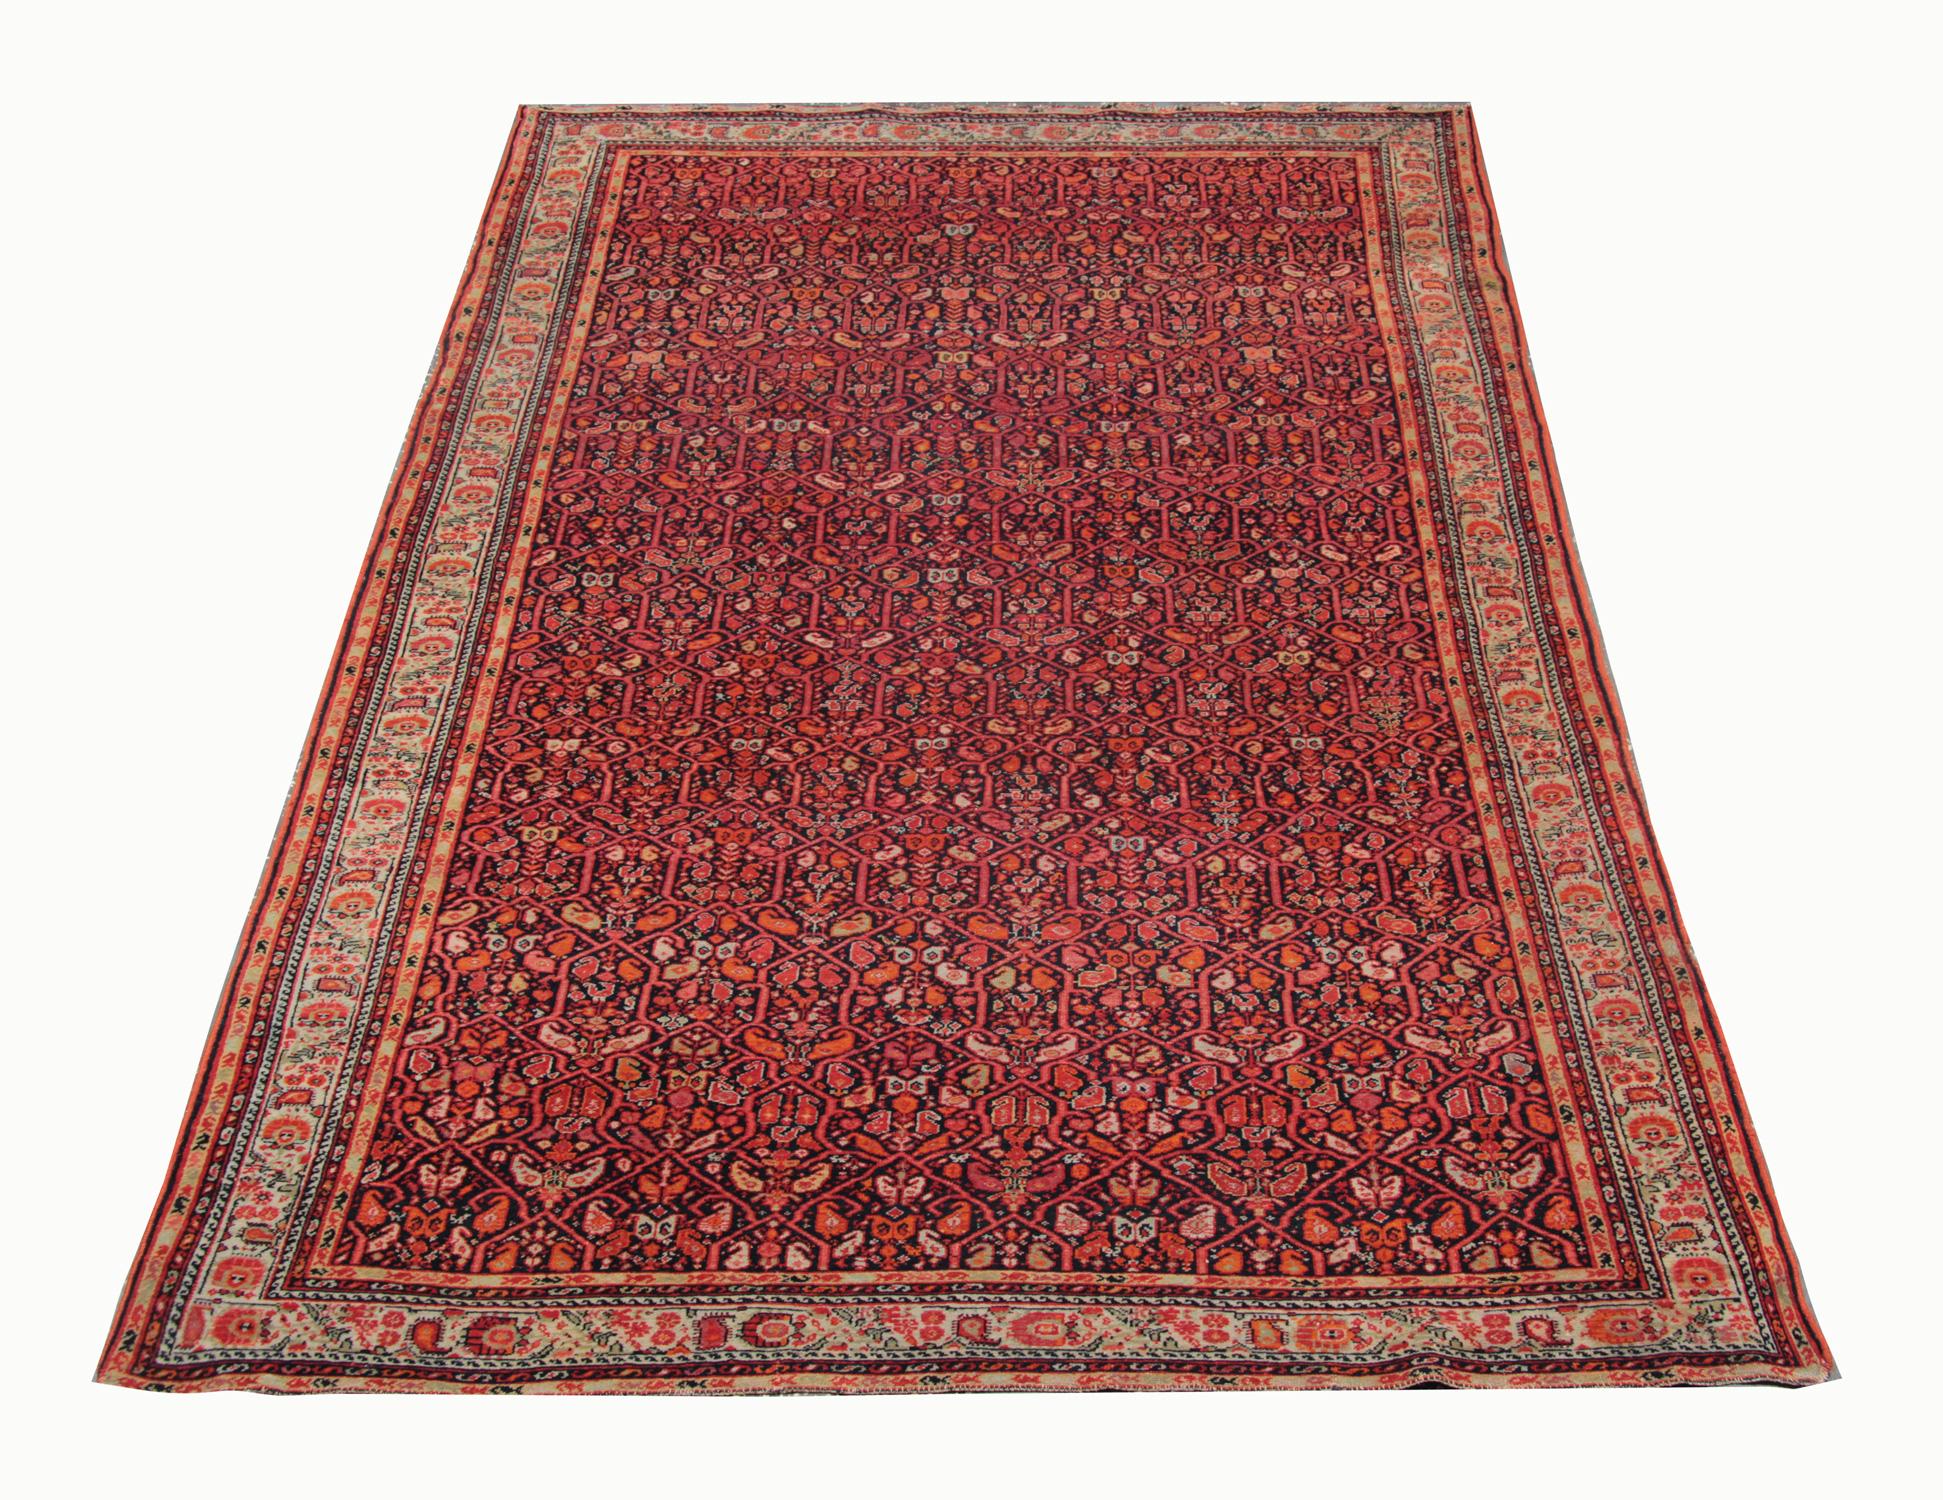 Gelb und Rot sind in diesem antiken kaukasischen Teppich, der 1880 in Aserbaidschan handgewebt wurde, zu einem sehr detaillierten Muster verwoben. Der Teppich Malayer zeichnet sich durch ein atemberaubendes Allover-Muster aus, das auf einem roten